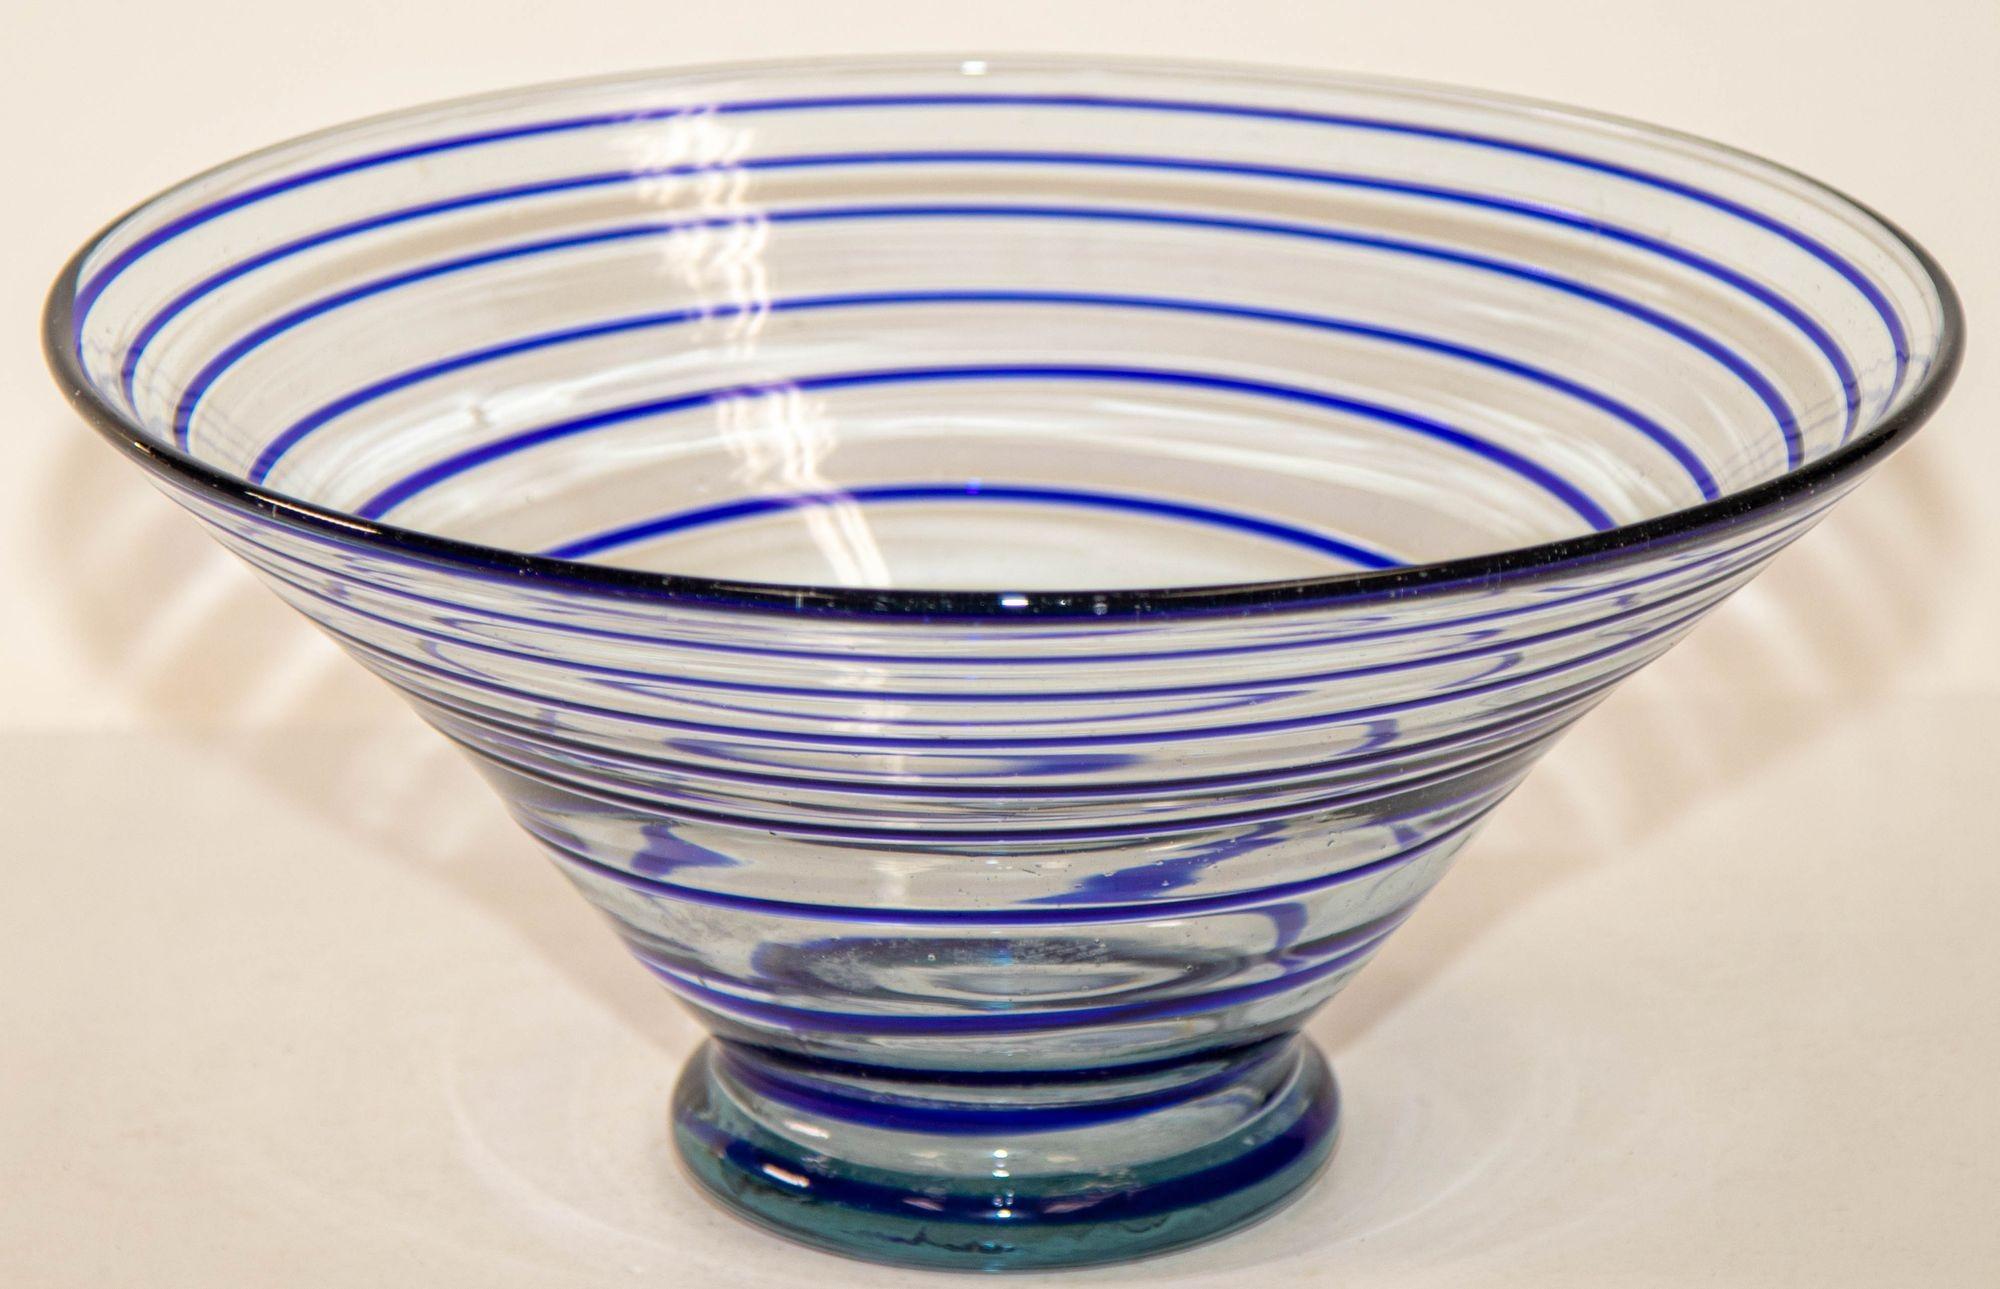 Midcentury mundgeblasenem Glas Centerpiece Italienisch Fratelli Toso Stil Art Glass Dish Bowl.
Italienische Schale aus mundgeblasenem Murano-Kunstglas mit Fuß aus der Jahrhundertmitte.
Schöne Murano mundgeblasen kobaltblau wirbelt Kunst